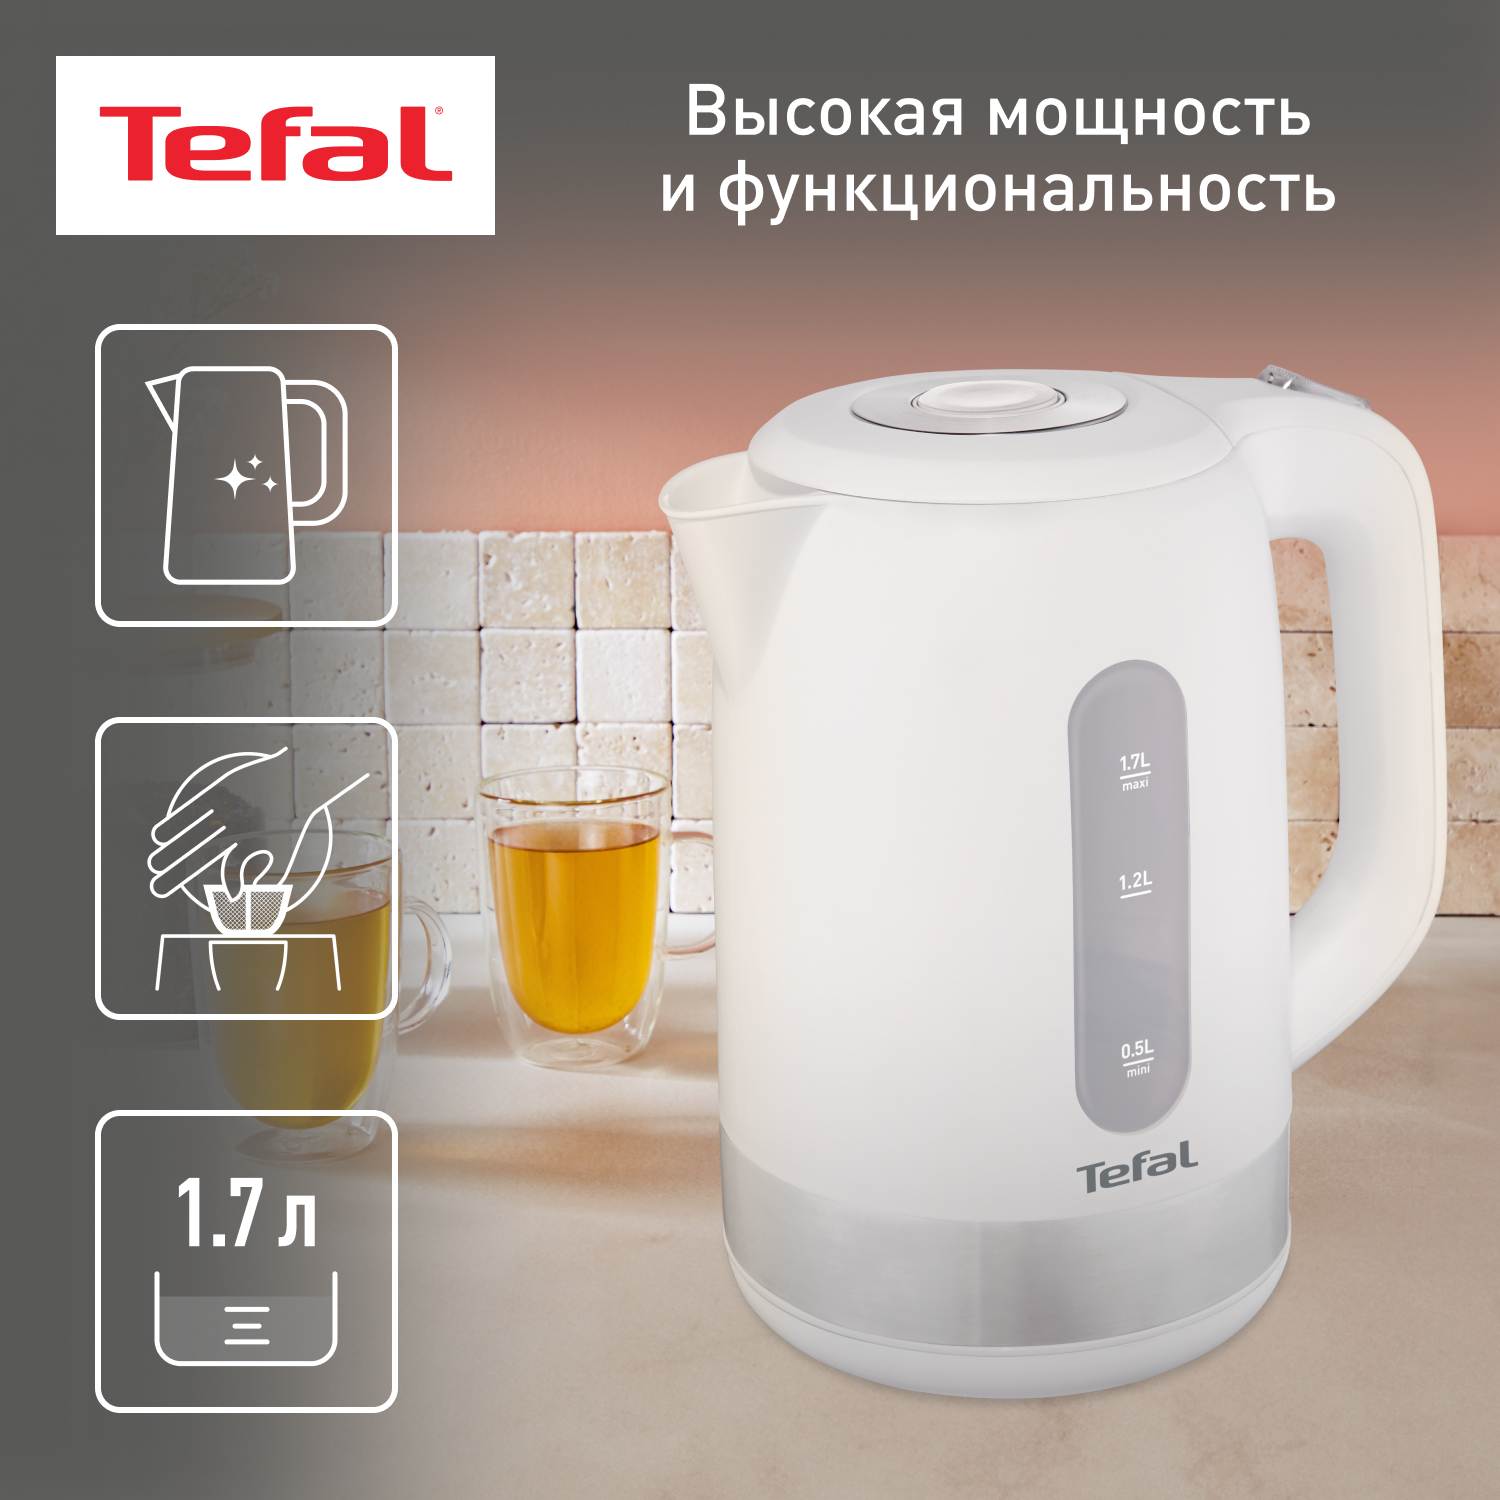 Чайник электрический Tefal KO330130 1.7 л белый, серебристый переключатель shimano 105 r7000 ss задний 11 скоростей серебристый irdr7000sss